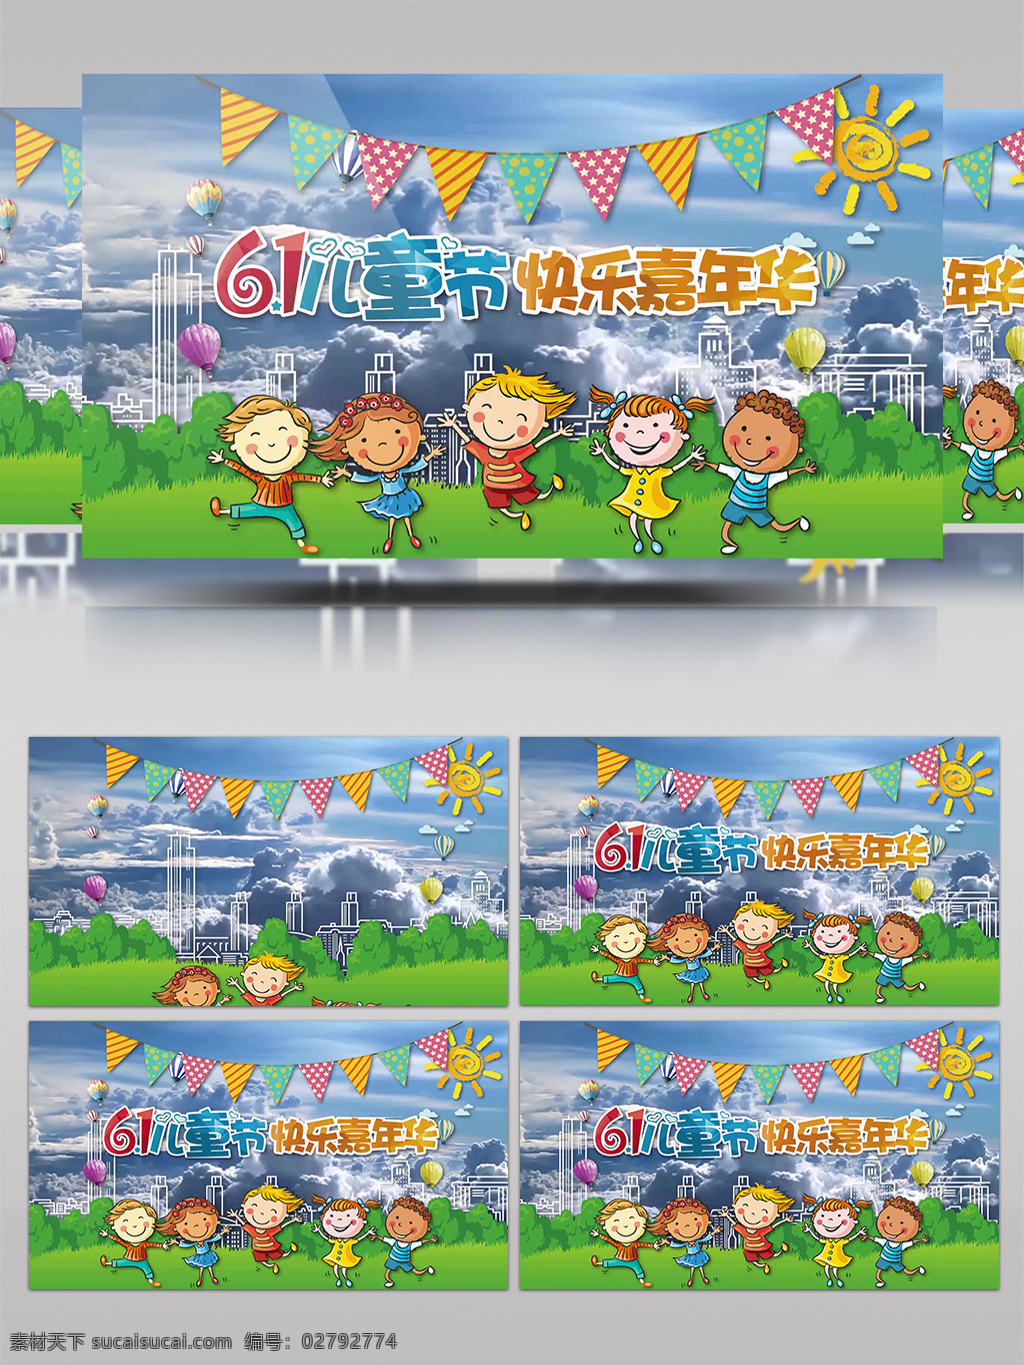 六一儿童节 快乐 嘉年华 ae 模版 六一 儿童节 节日 庆祝 彩带 欢乐 糖果